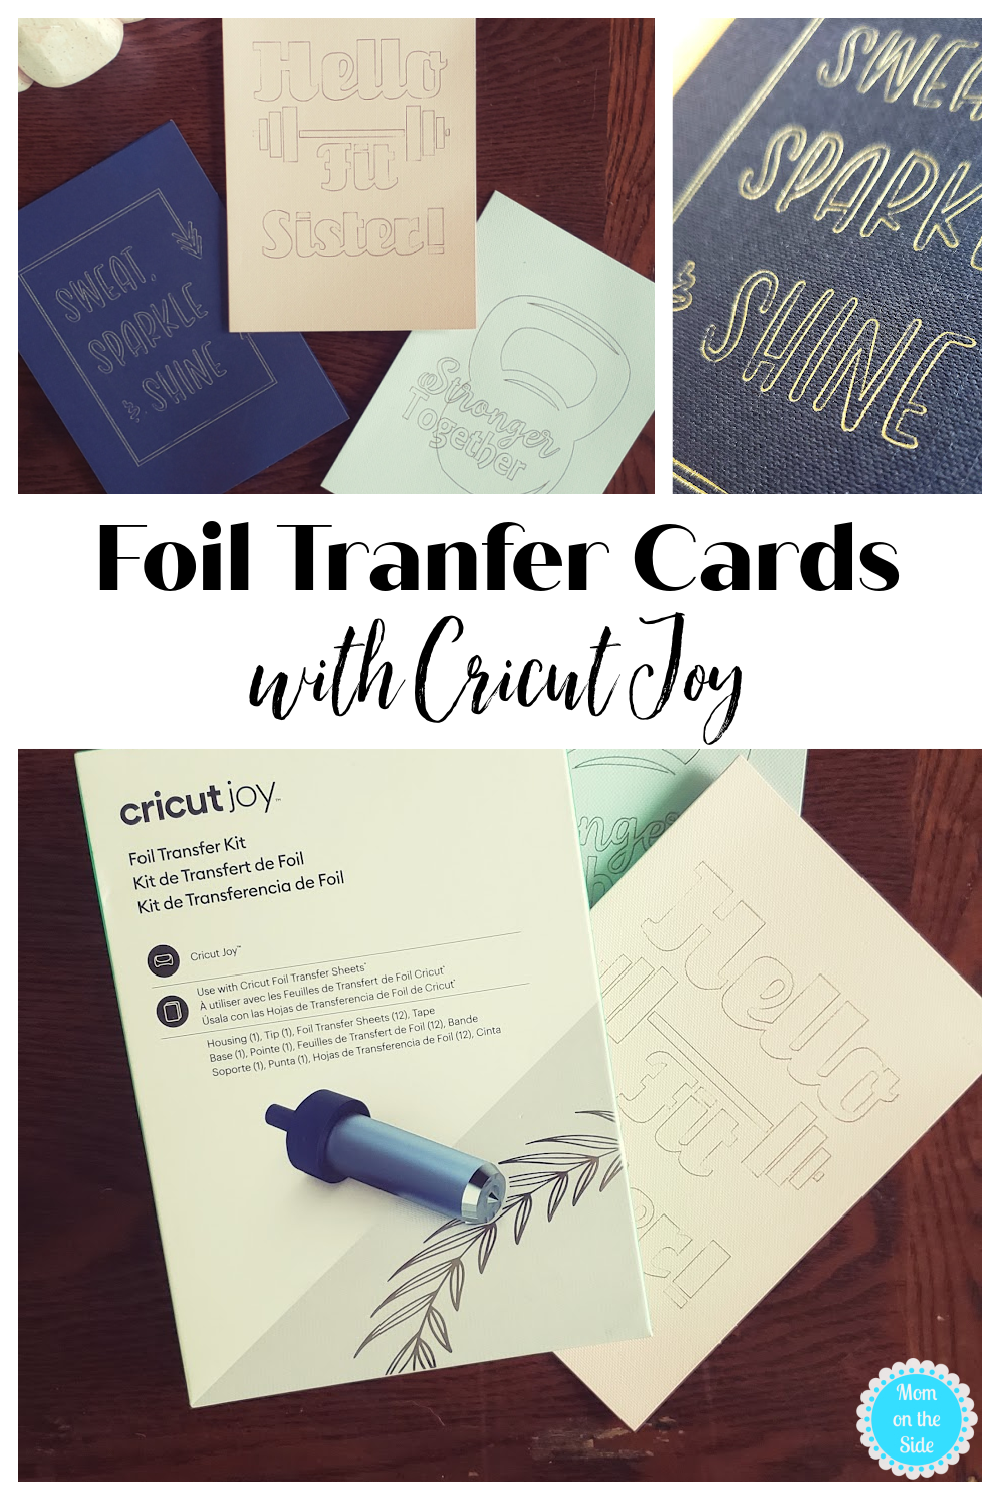 Cricut Joy Foil Transfer Kit 